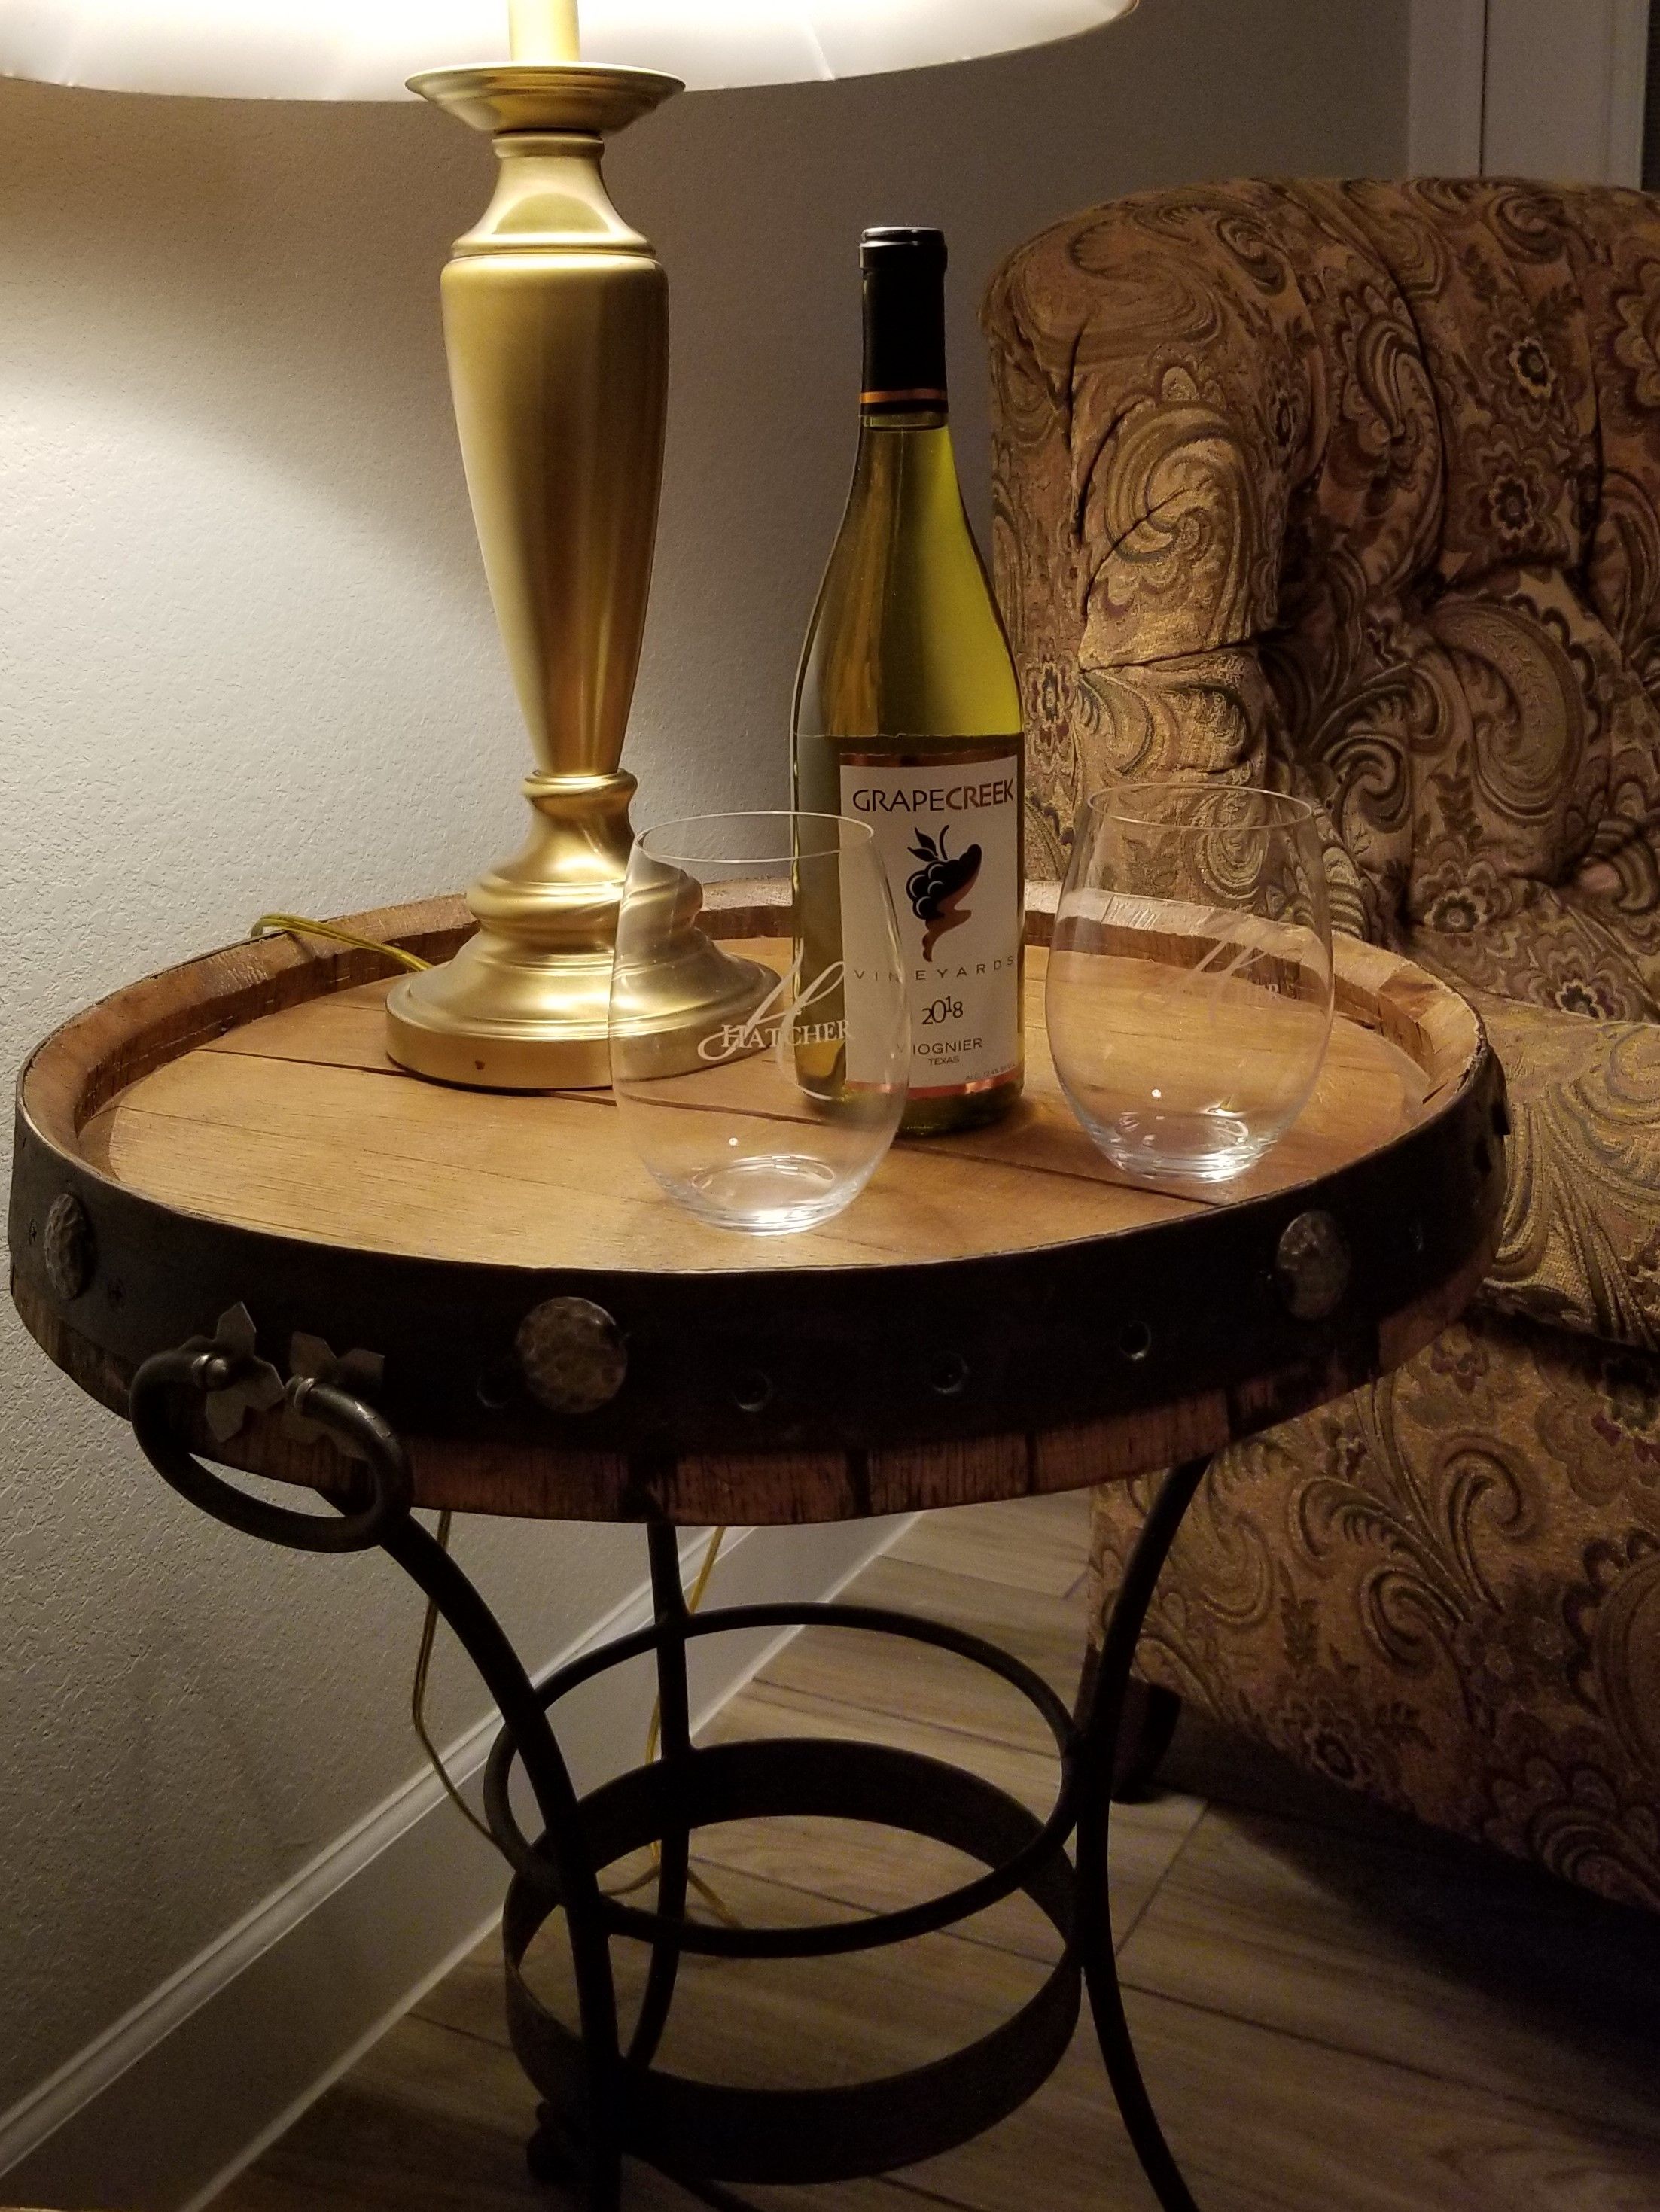 Wine Bottle & Glasses.jpg